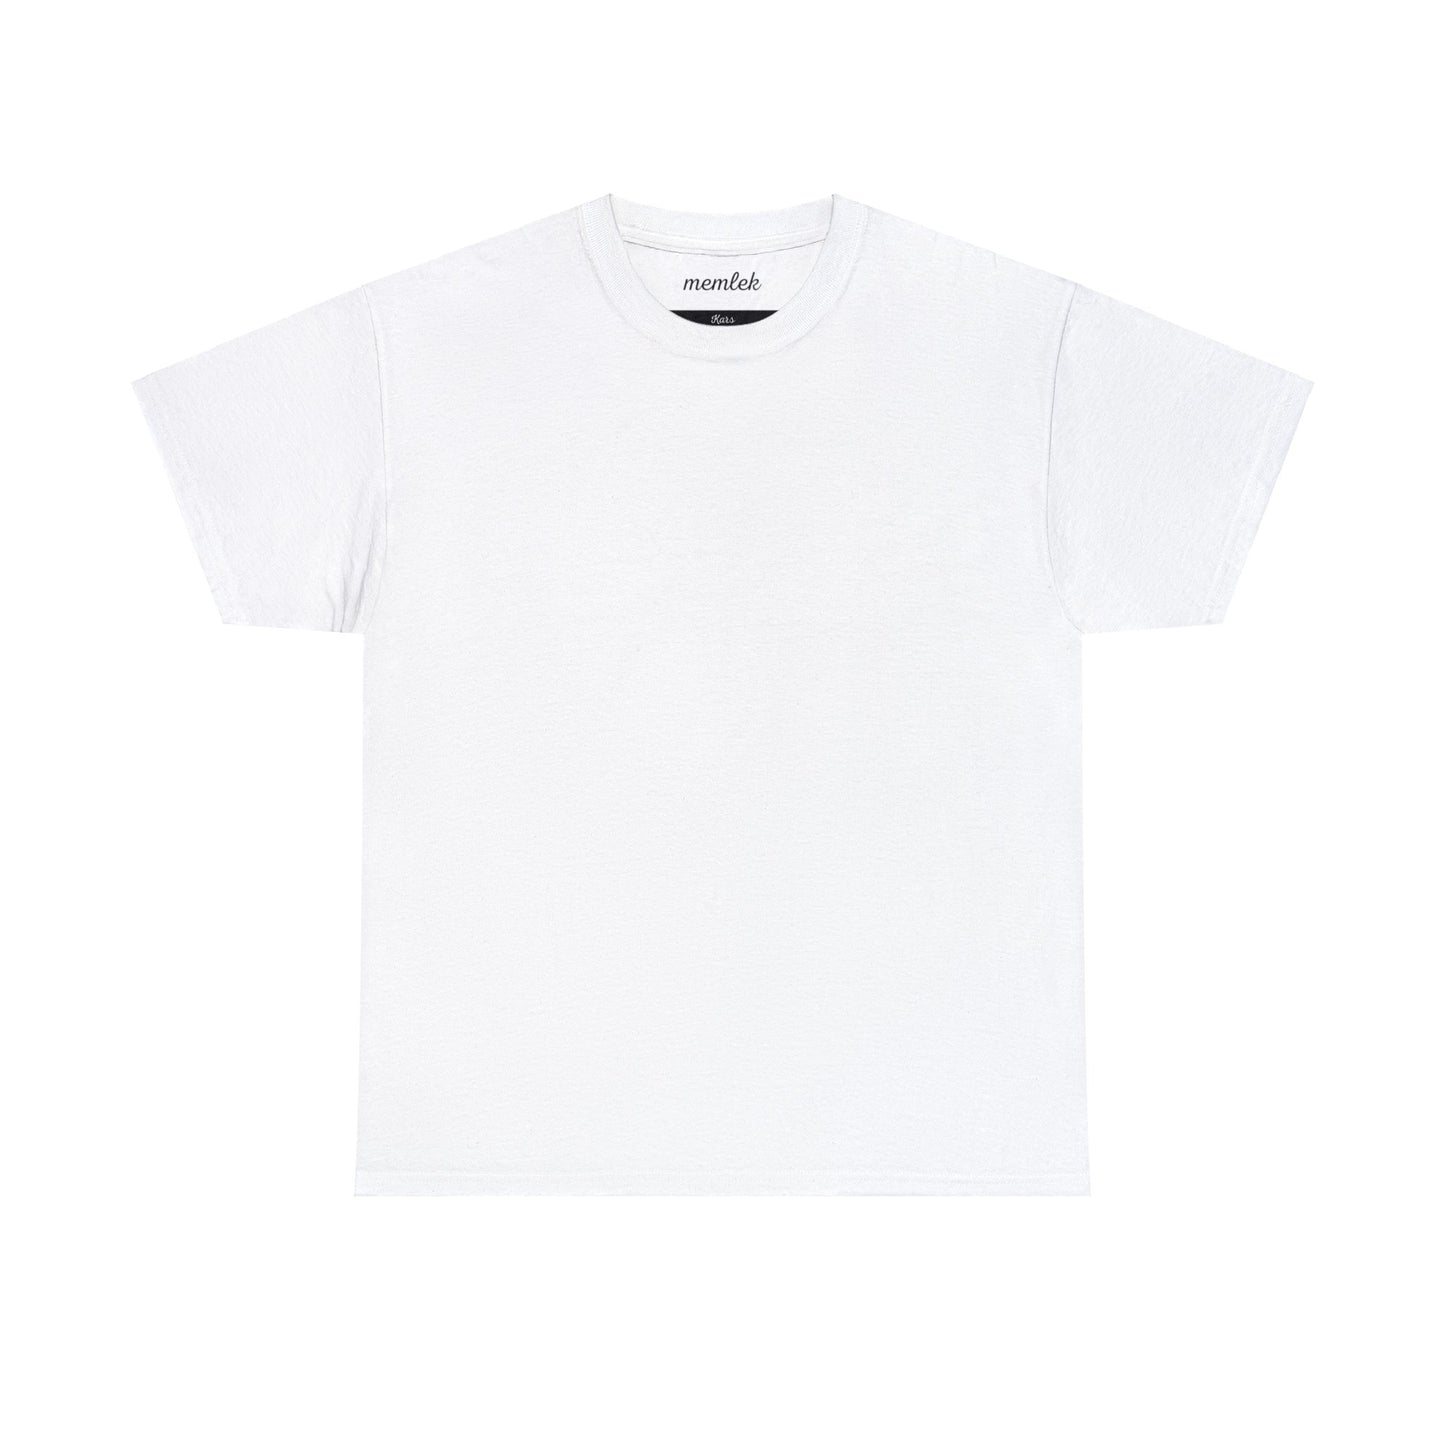 Kurt - 36 Kars - T-Shirt - Back Print - Black/White